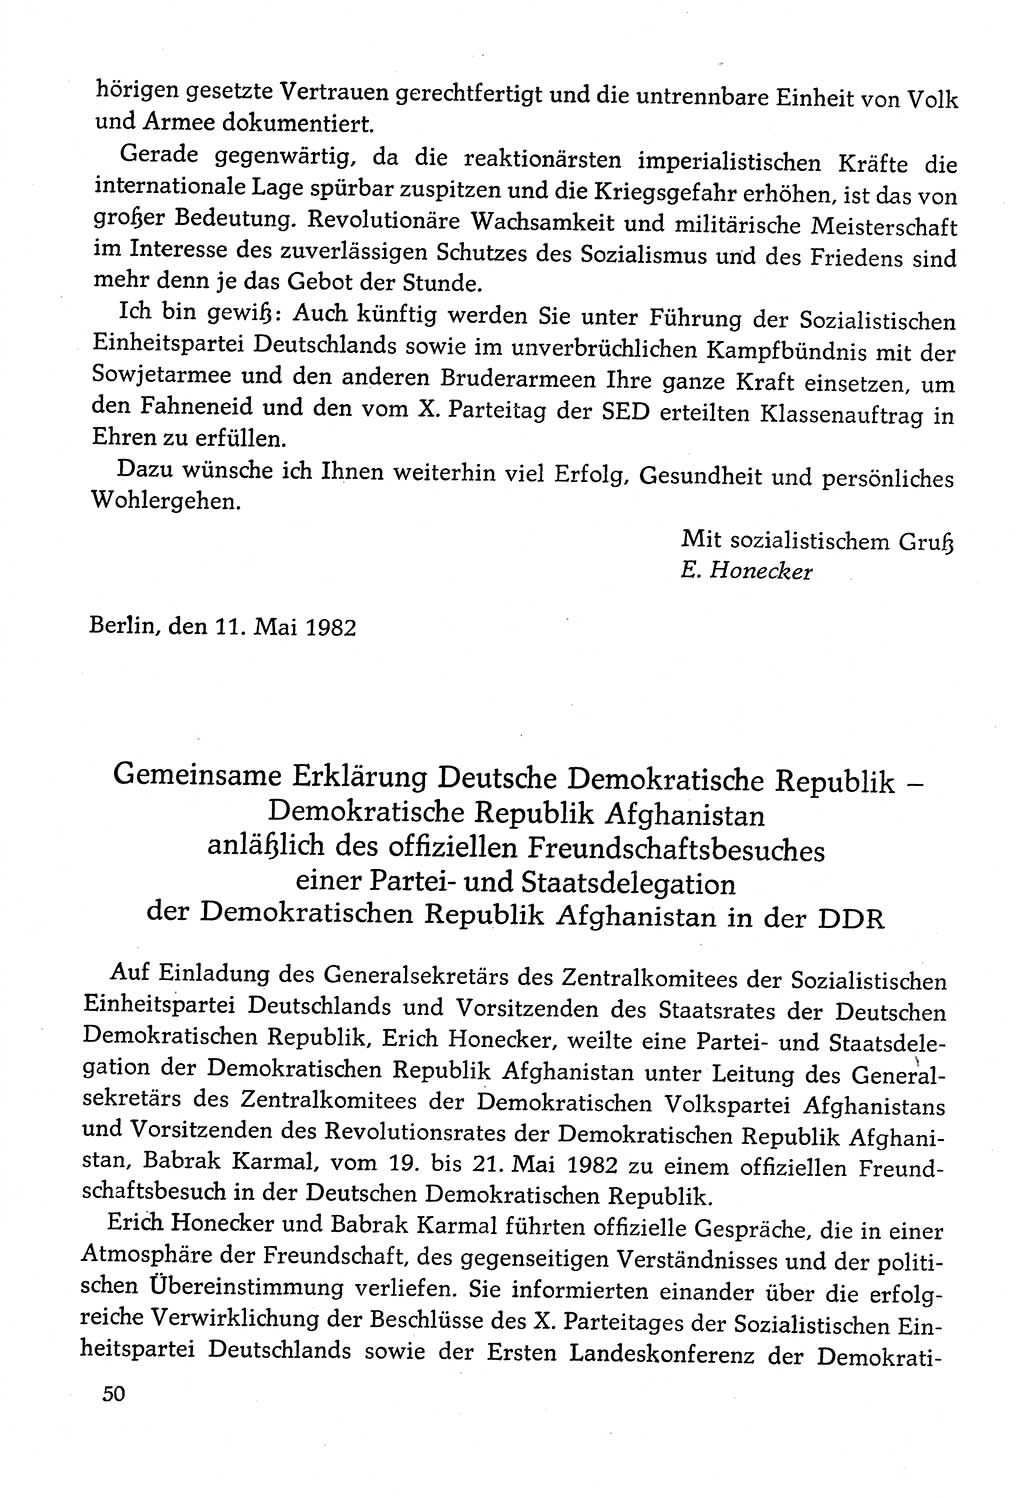 Dokumente der Sozialistischen Einheitspartei Deutschlands (SED) [Deutsche Demokratische Republik (DDR)] 1982-1983, Seite 50 (Dok. SED DDR 1982-1983, S. 50)